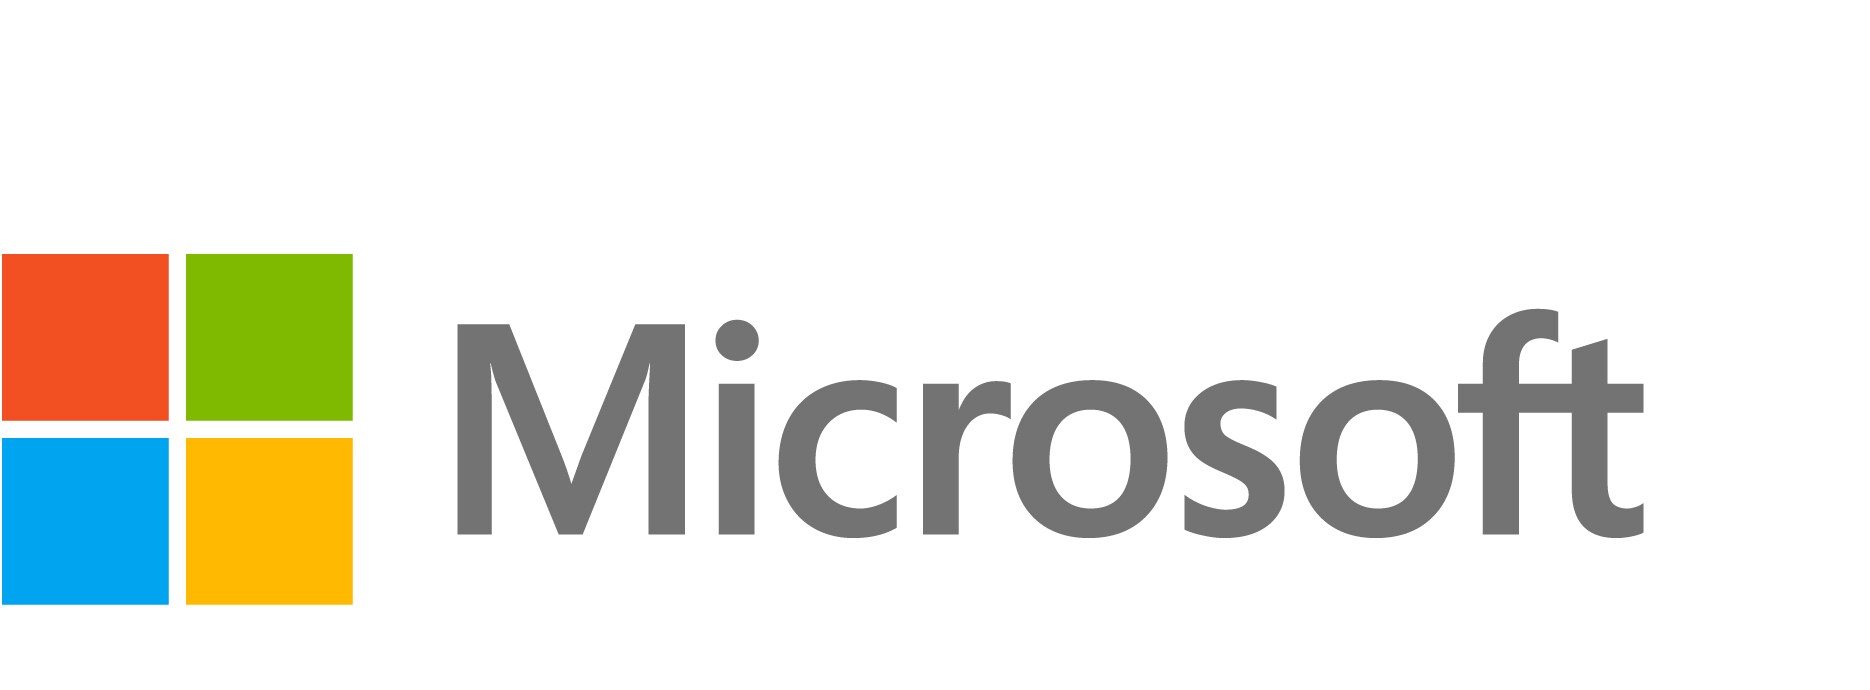 Windows 10/11 Enterprise E3 - subscription license (1 month) - 1 license